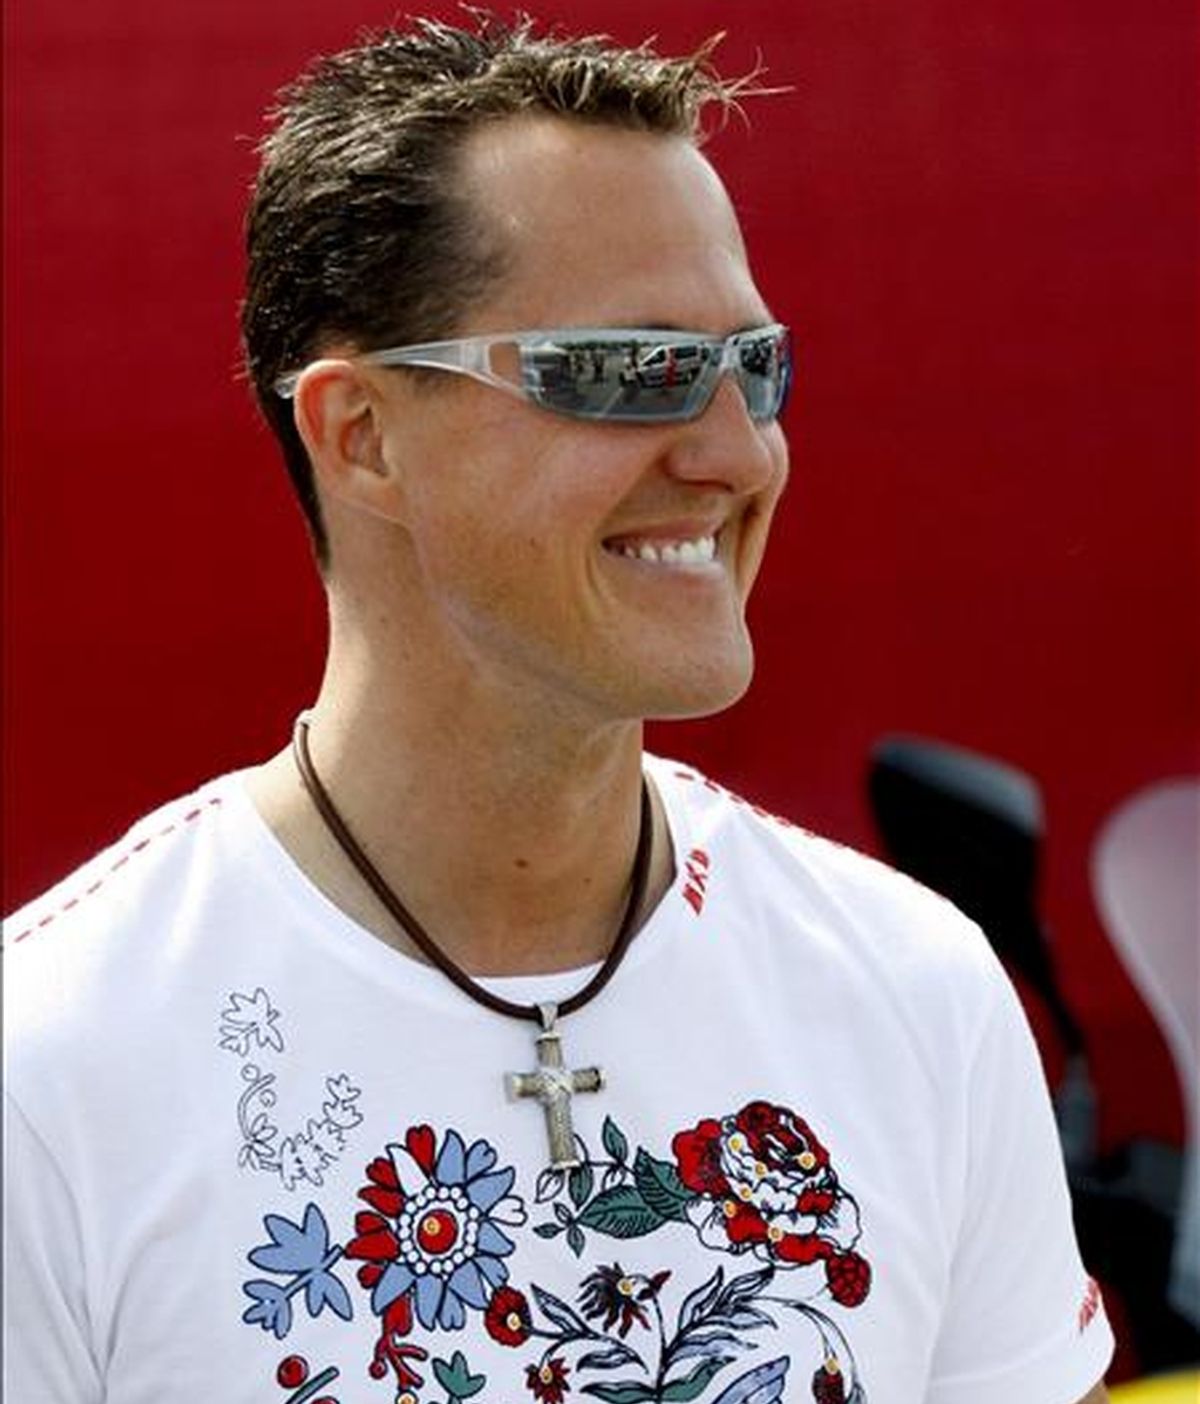 El ex piloto alemán Michael Schumacher, siete veces campeón mundial de Fórmula Uno. EFE/Archivo